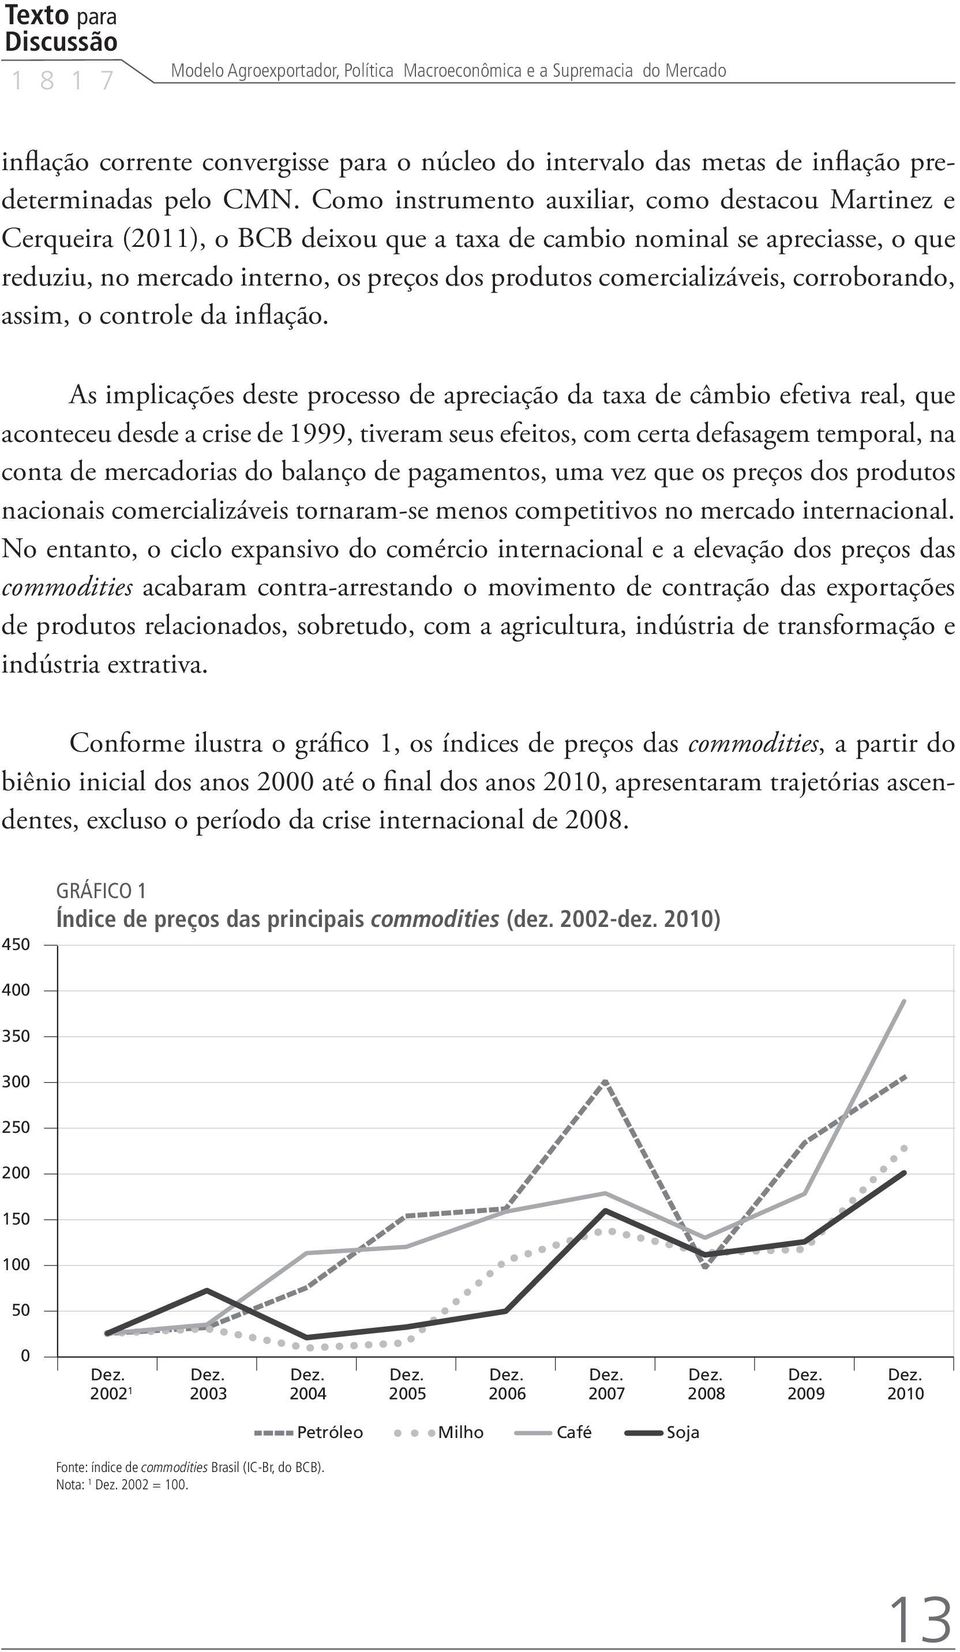 Como instrumento auxiliar, como destacou Martinez e Cerqueira (2011), o BCB deixou que a taxa de cambio nominal se apreciasse, o que reduziu, no mercado interno, os preços dos produtos